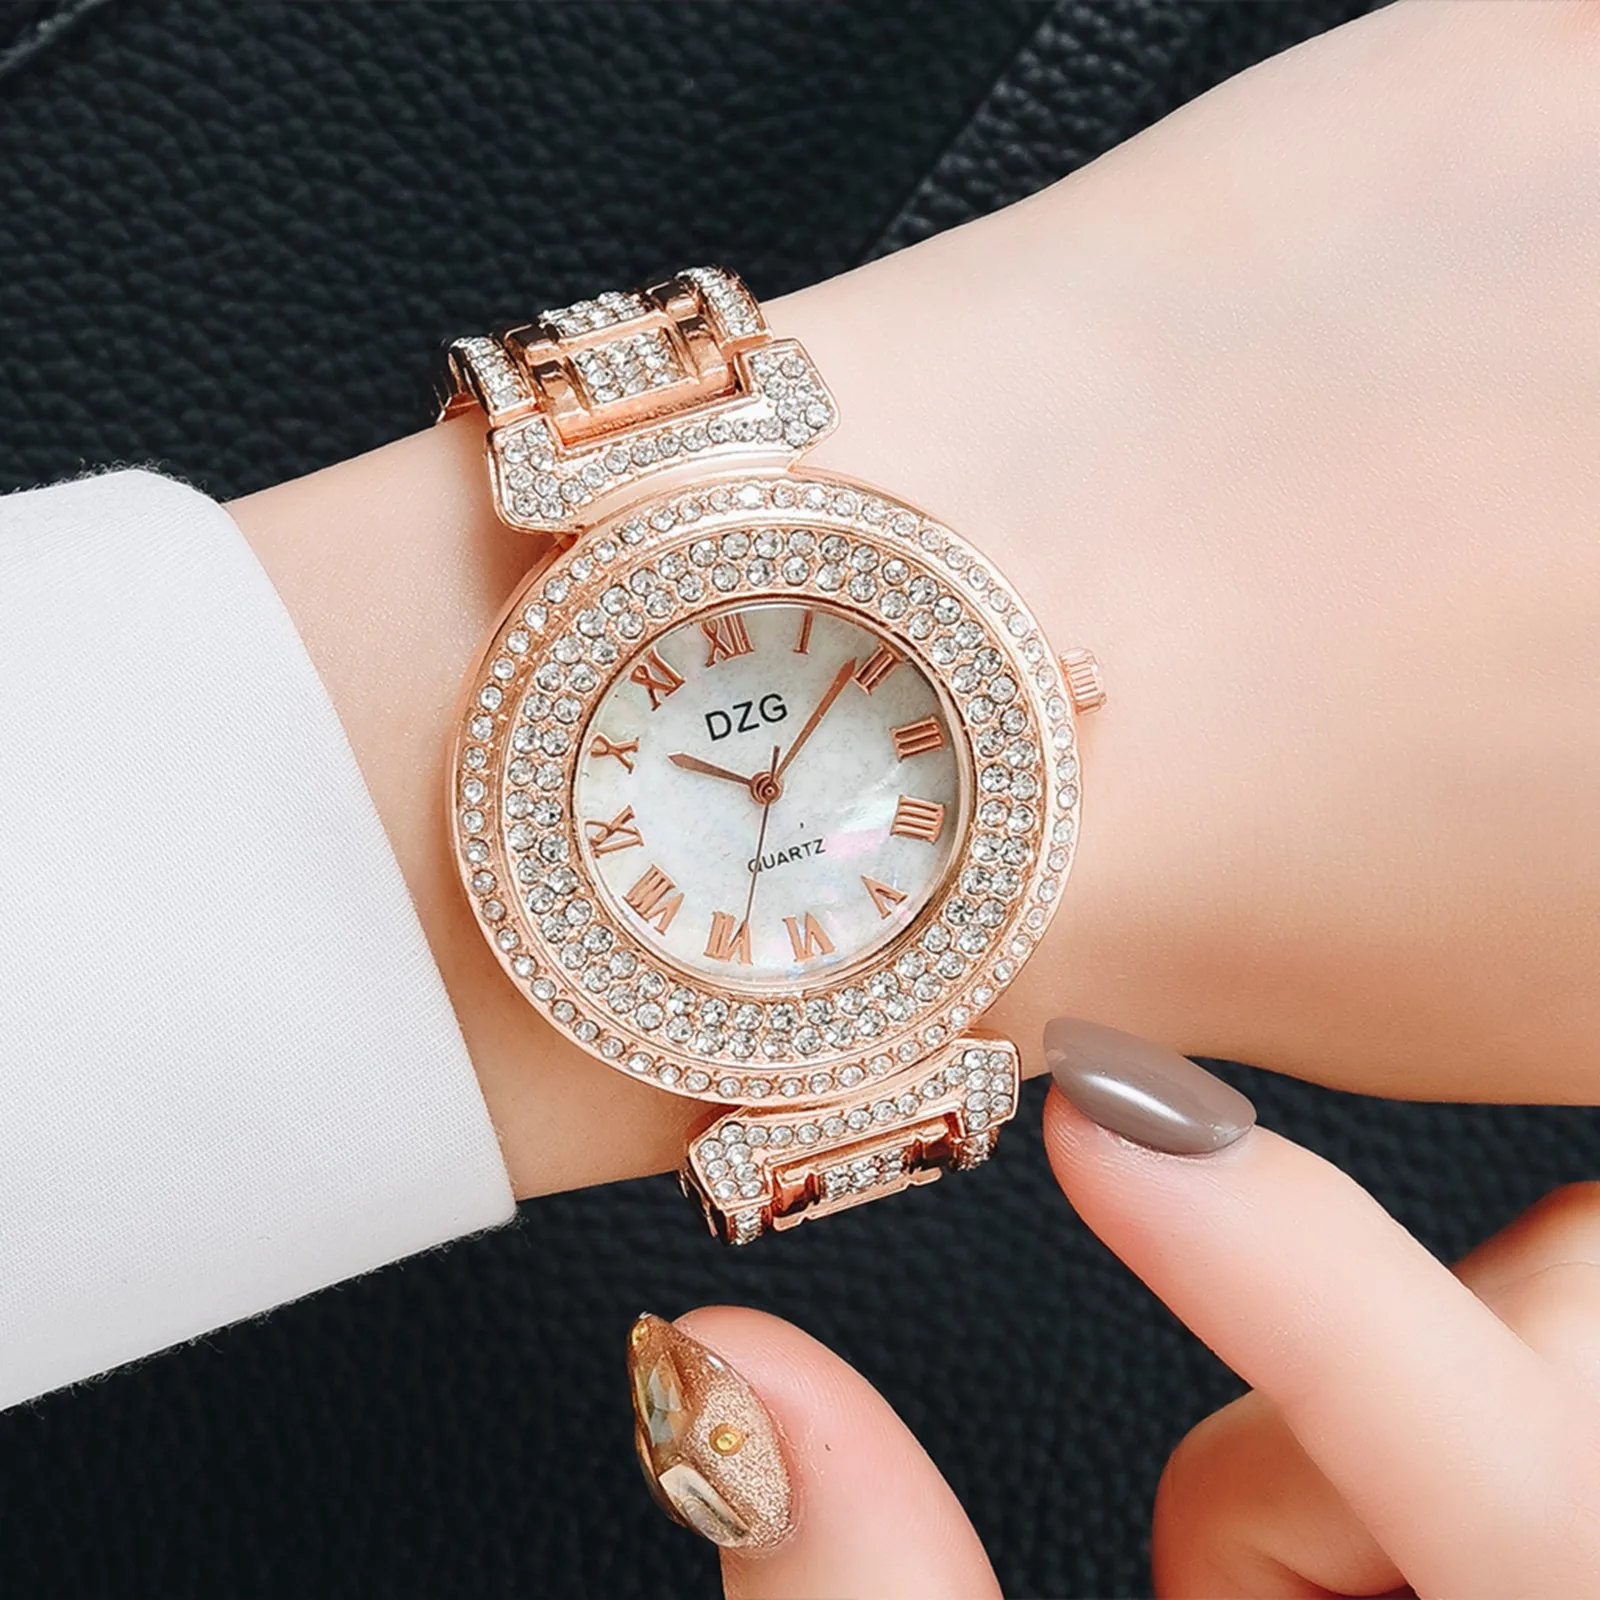 

2021 New Women Luxury Watch Diamond Crystal Dial Wristwatch Stainless Steel Strap Watches Quartz Vintage Small Clocks Reloj Dama